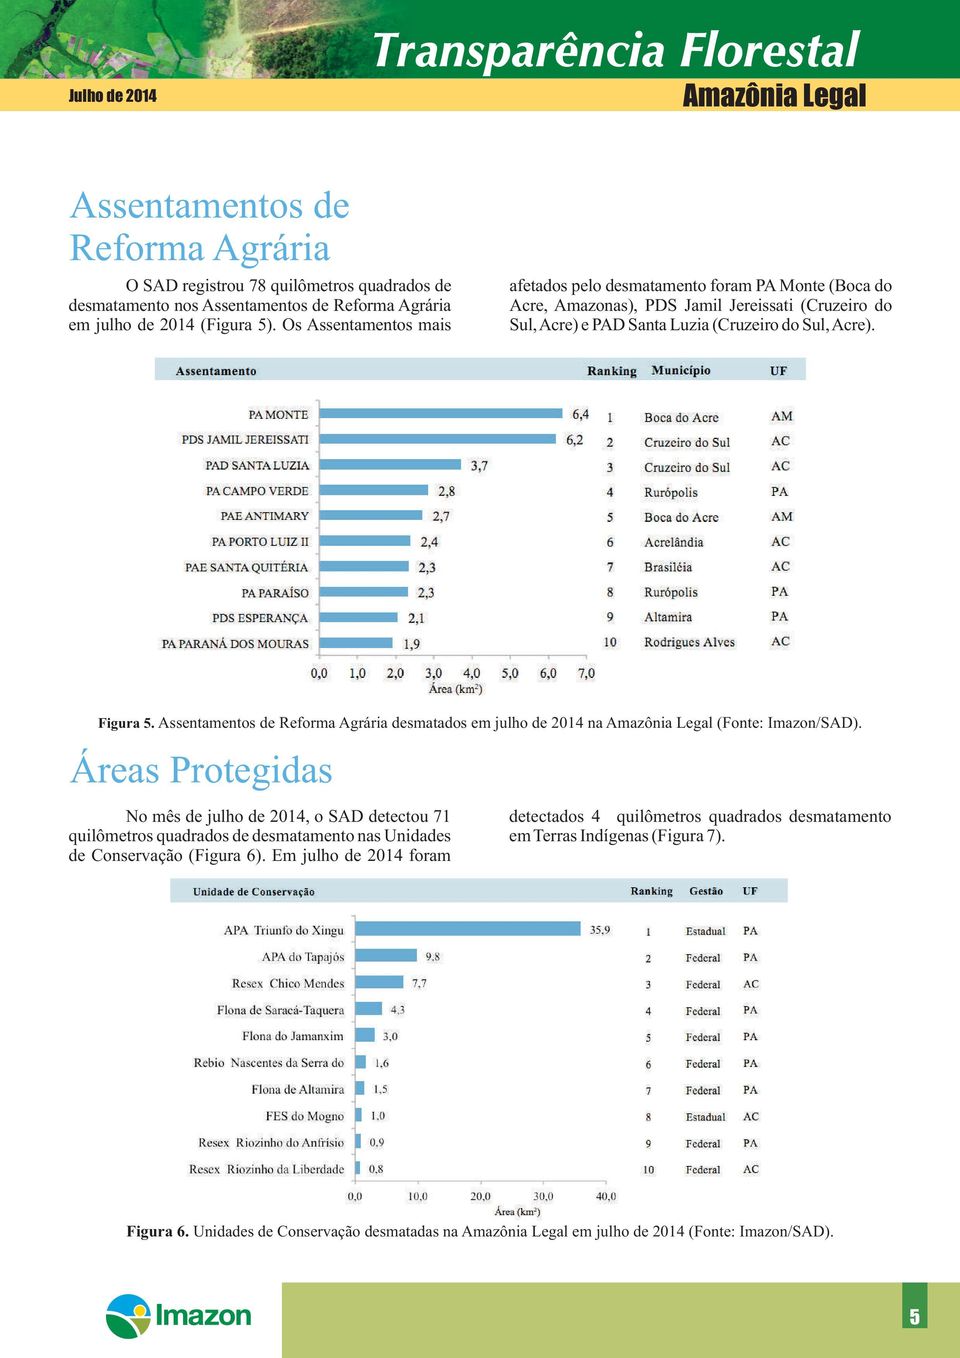 Assentamentos de Reforma Agrária desmatados em julho de 2014 na (Fonte: Imazon/SAD).